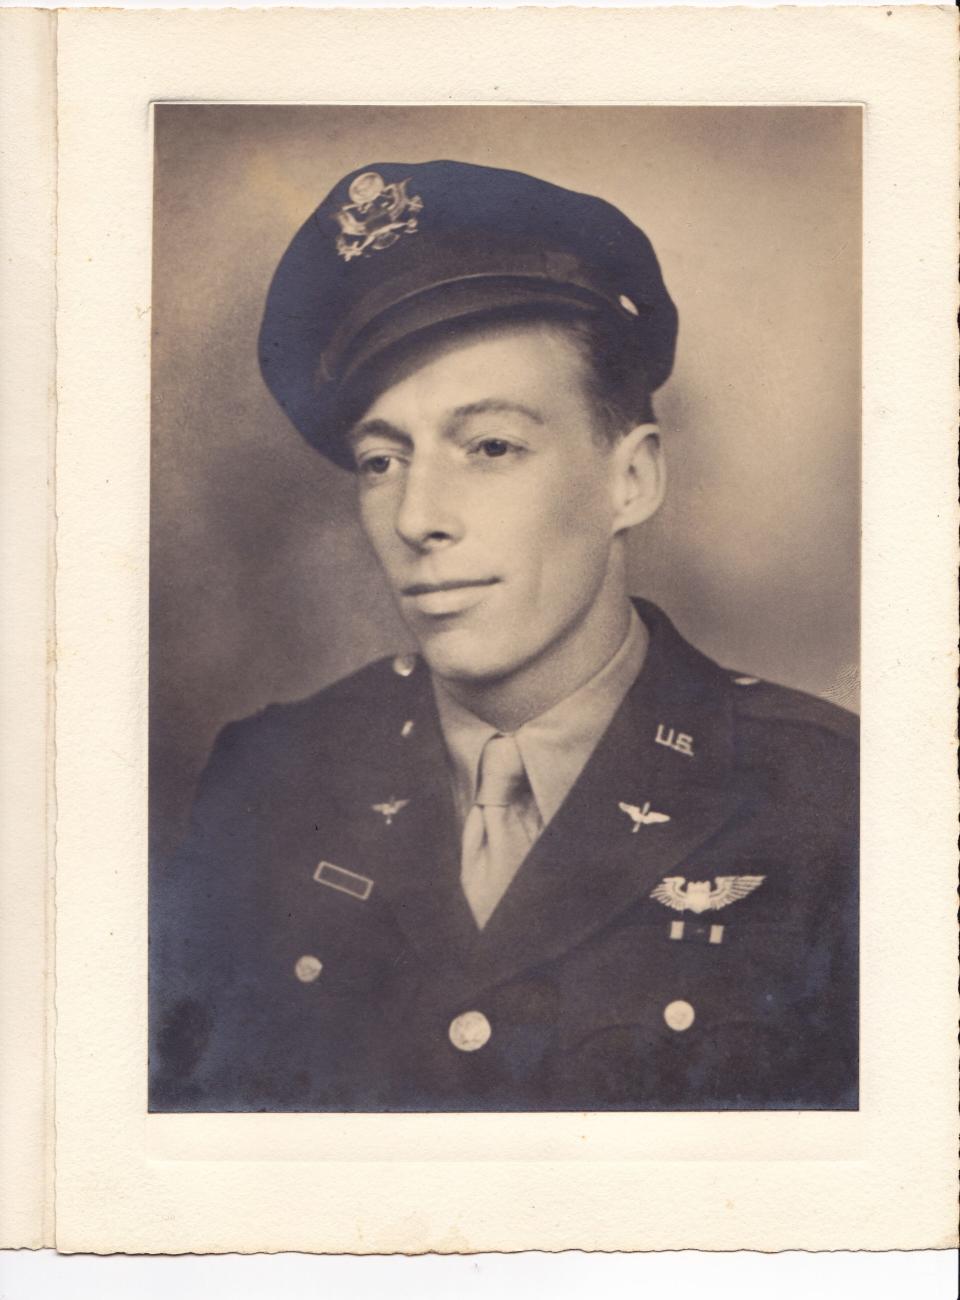 Sam Dale Jr., U.S. Air Force Second Lieutenant